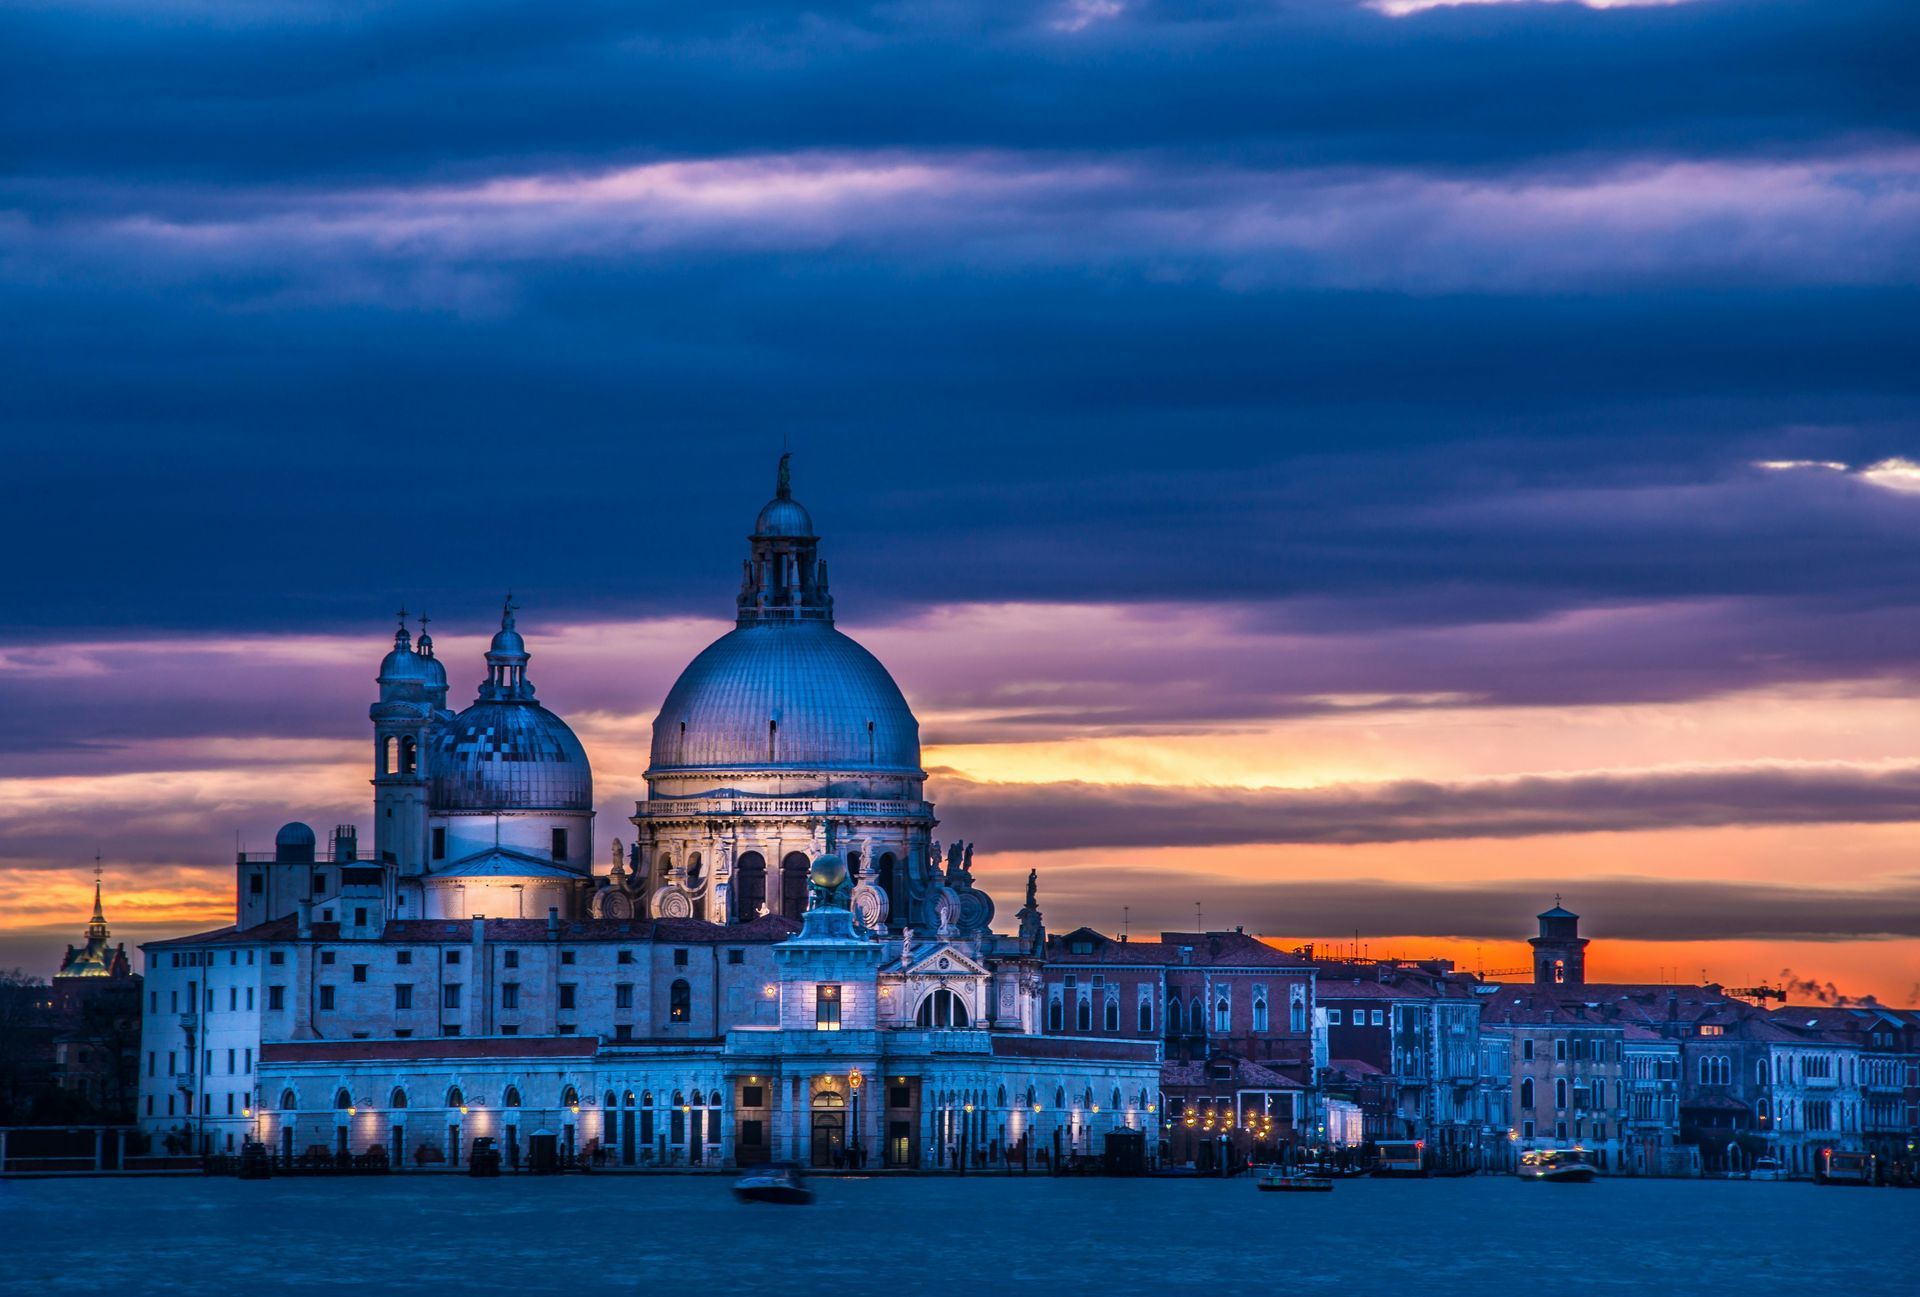 Venice's Cultural Heritage